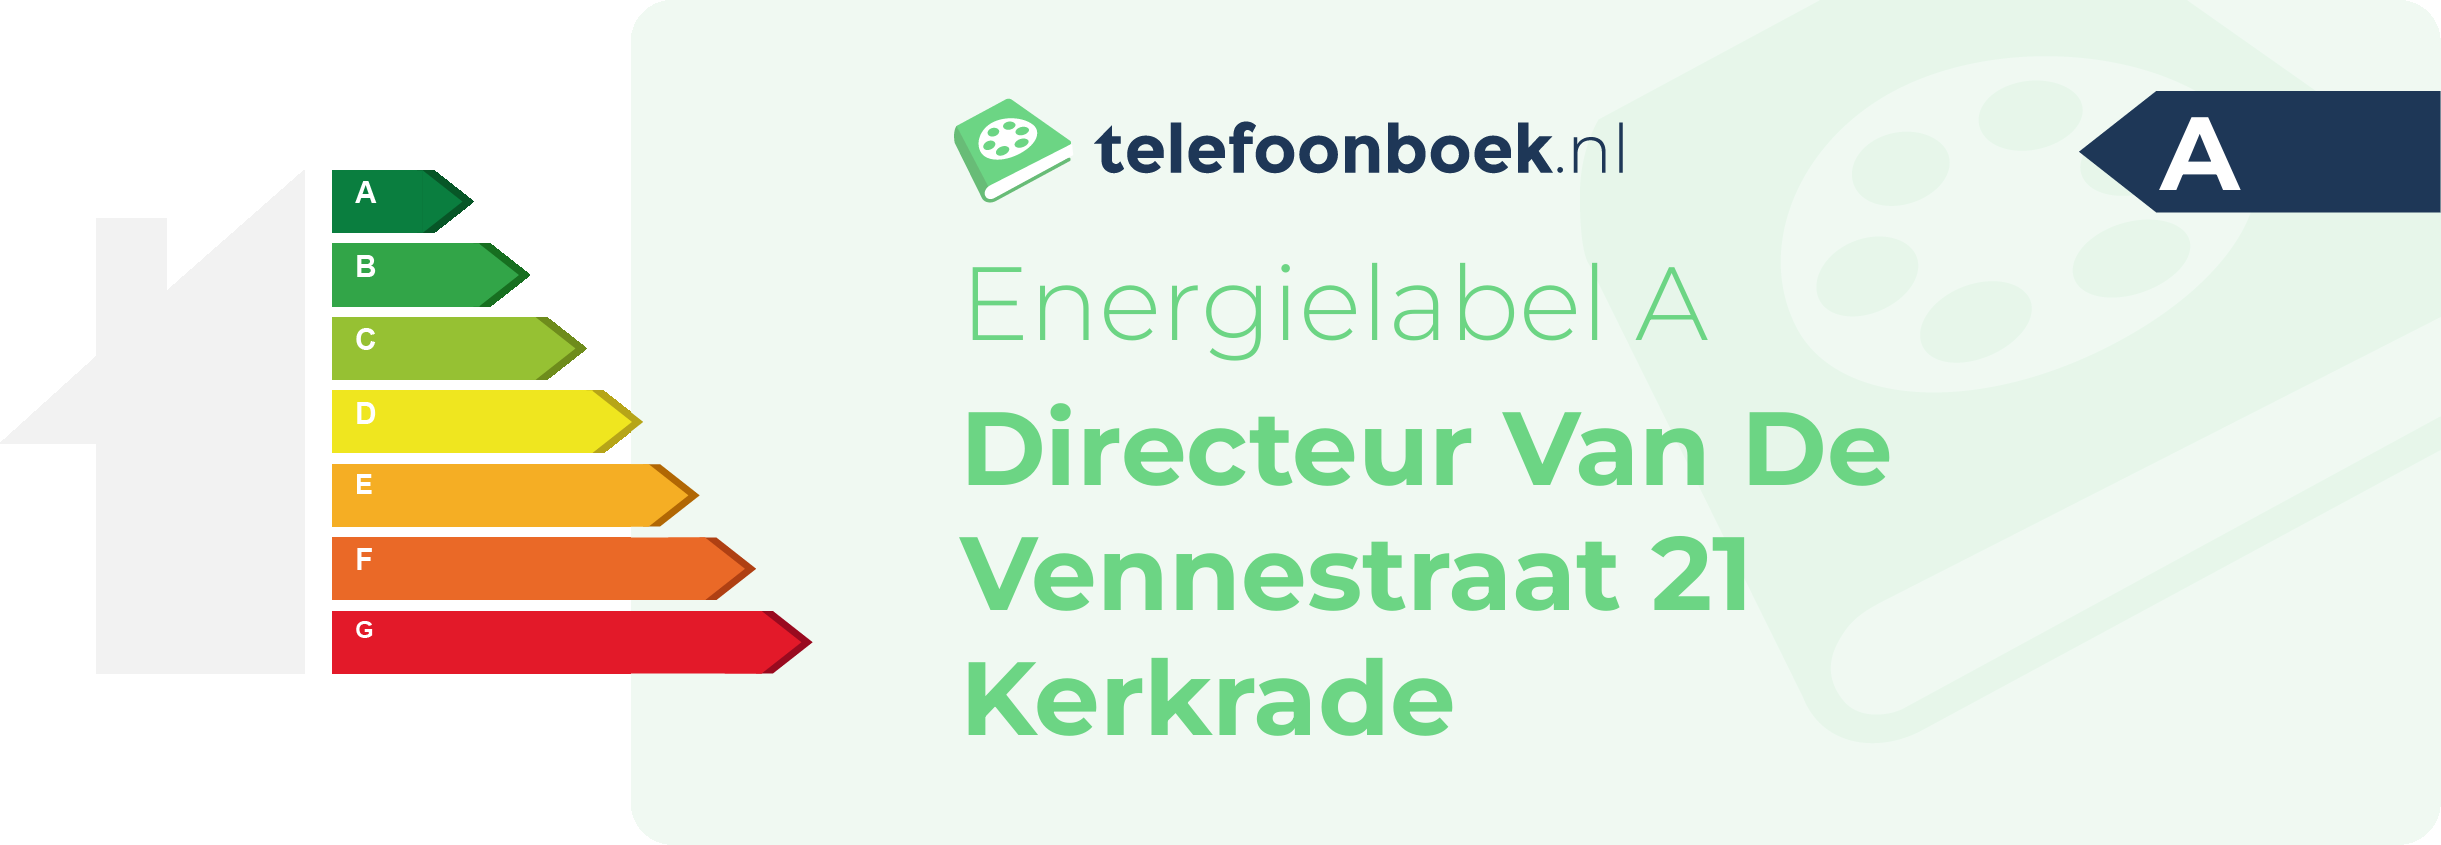 Energielabel Directeur Van De Vennestraat 21 Kerkrade